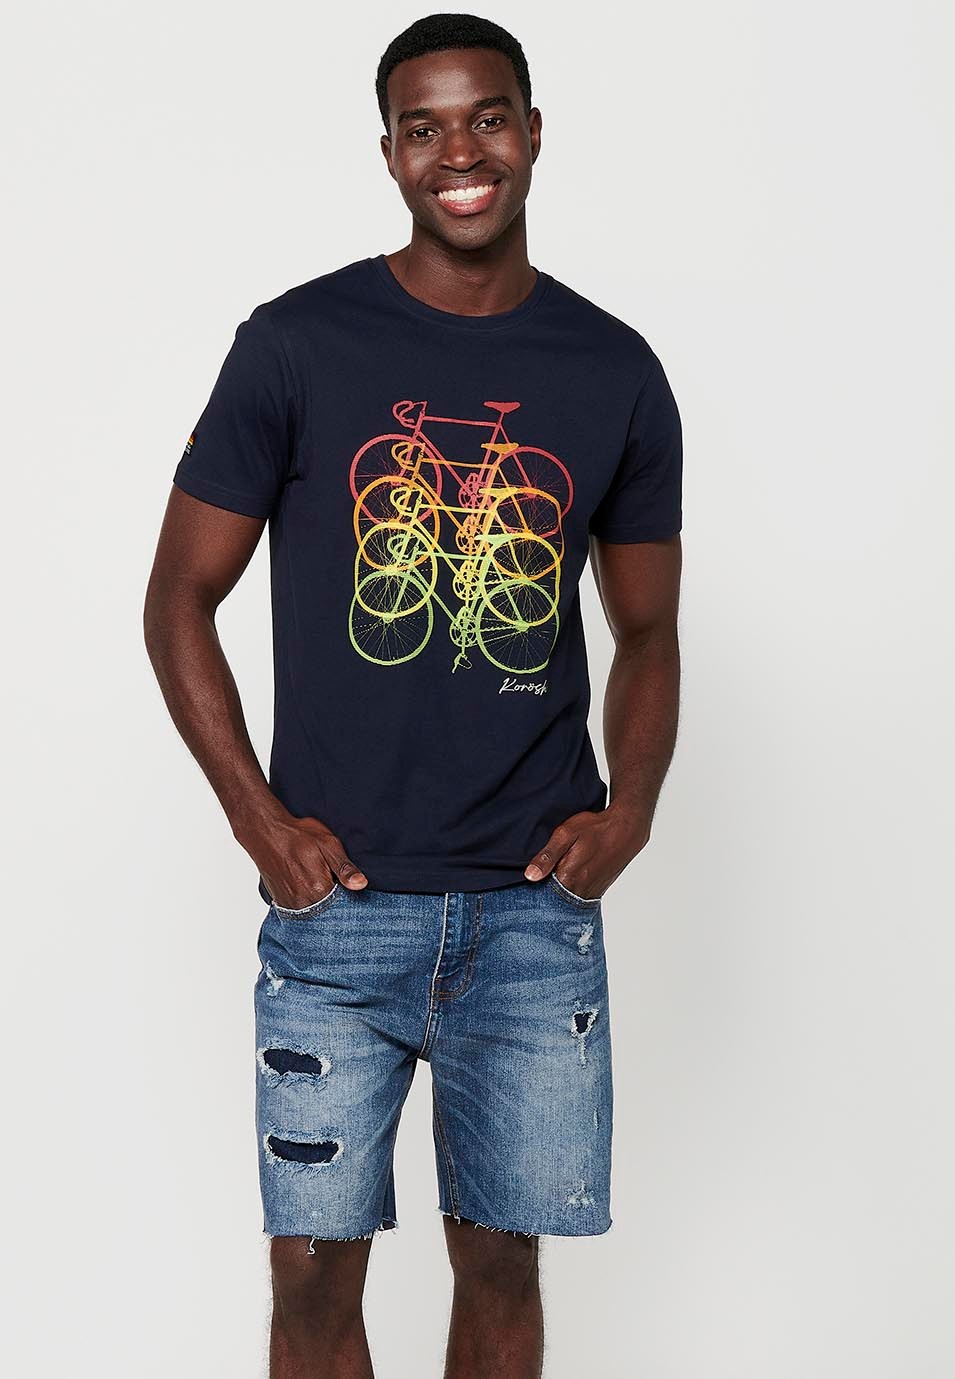 T-shirt en coton à manches courtes avec imprimé vélo sur le devant, coloris marine pour homme